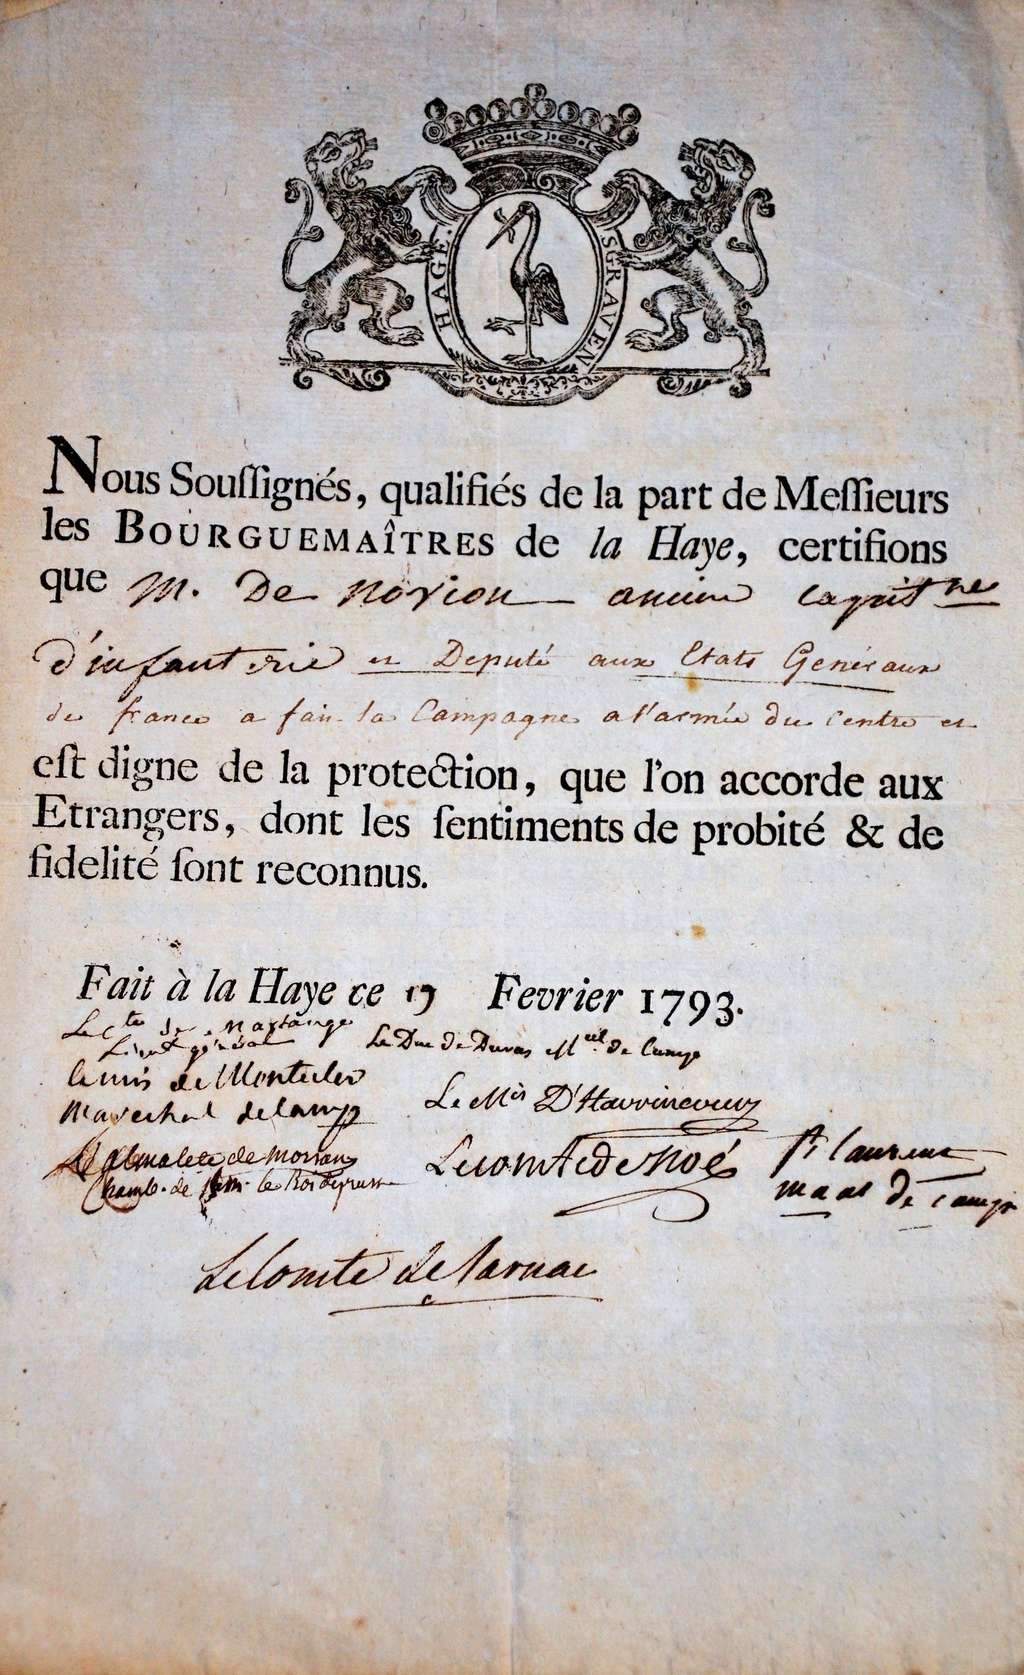 Lettres d'accréditation, de recommandation du Comte de Novion. Dsc_0016